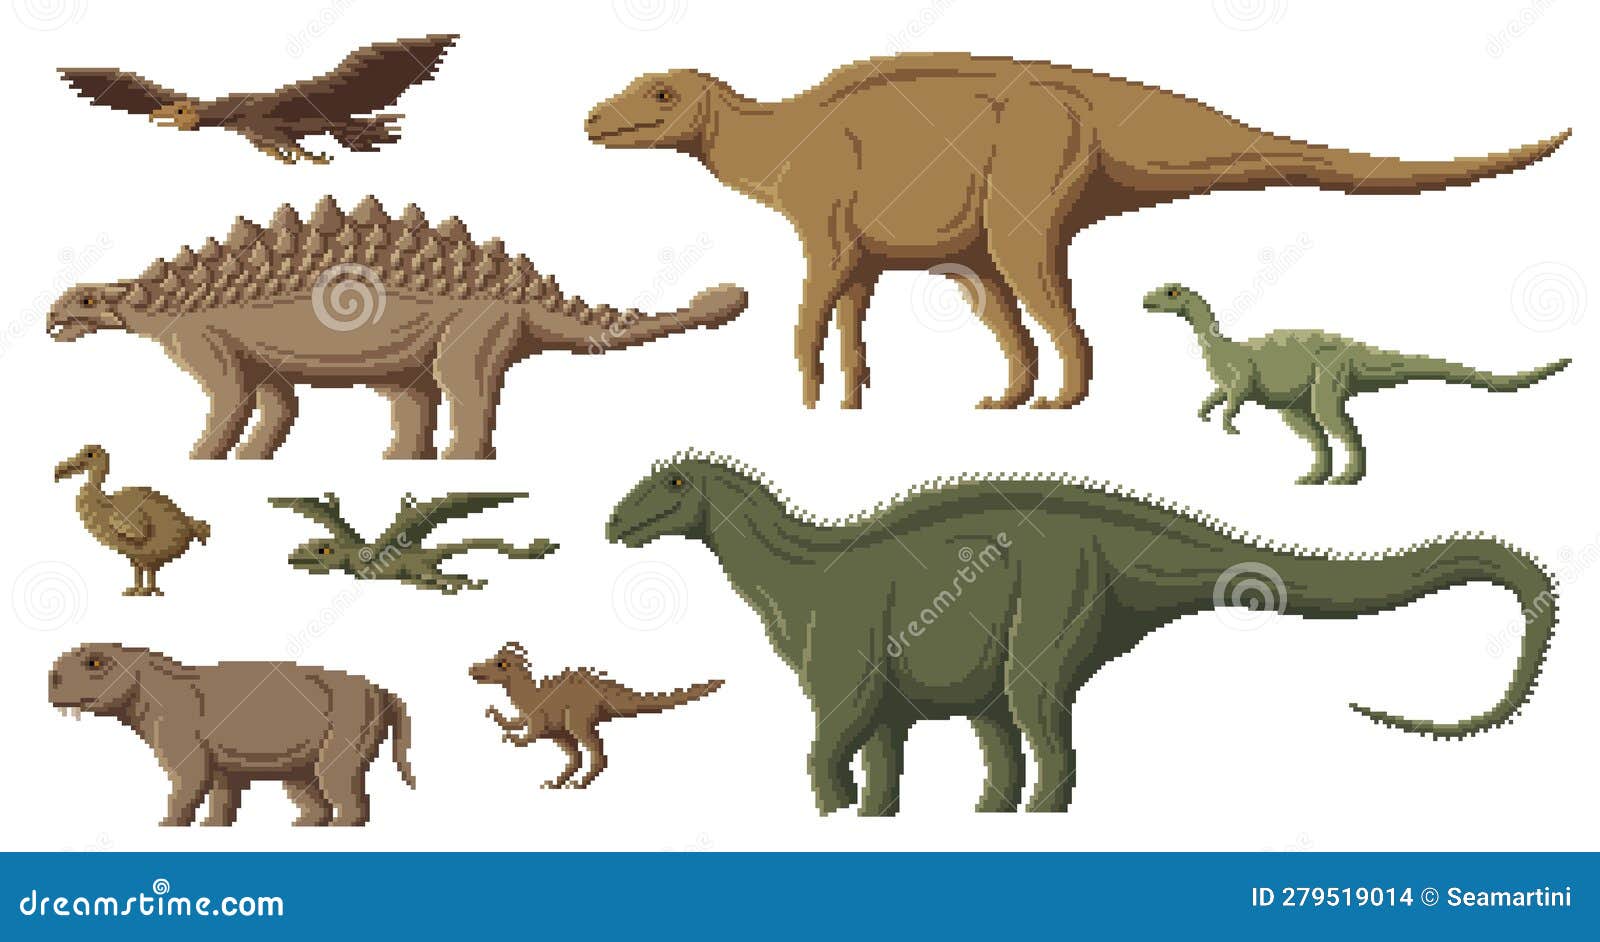 Página 8, Vetores e ilustrações de Jogo dinossauro para download gratuito